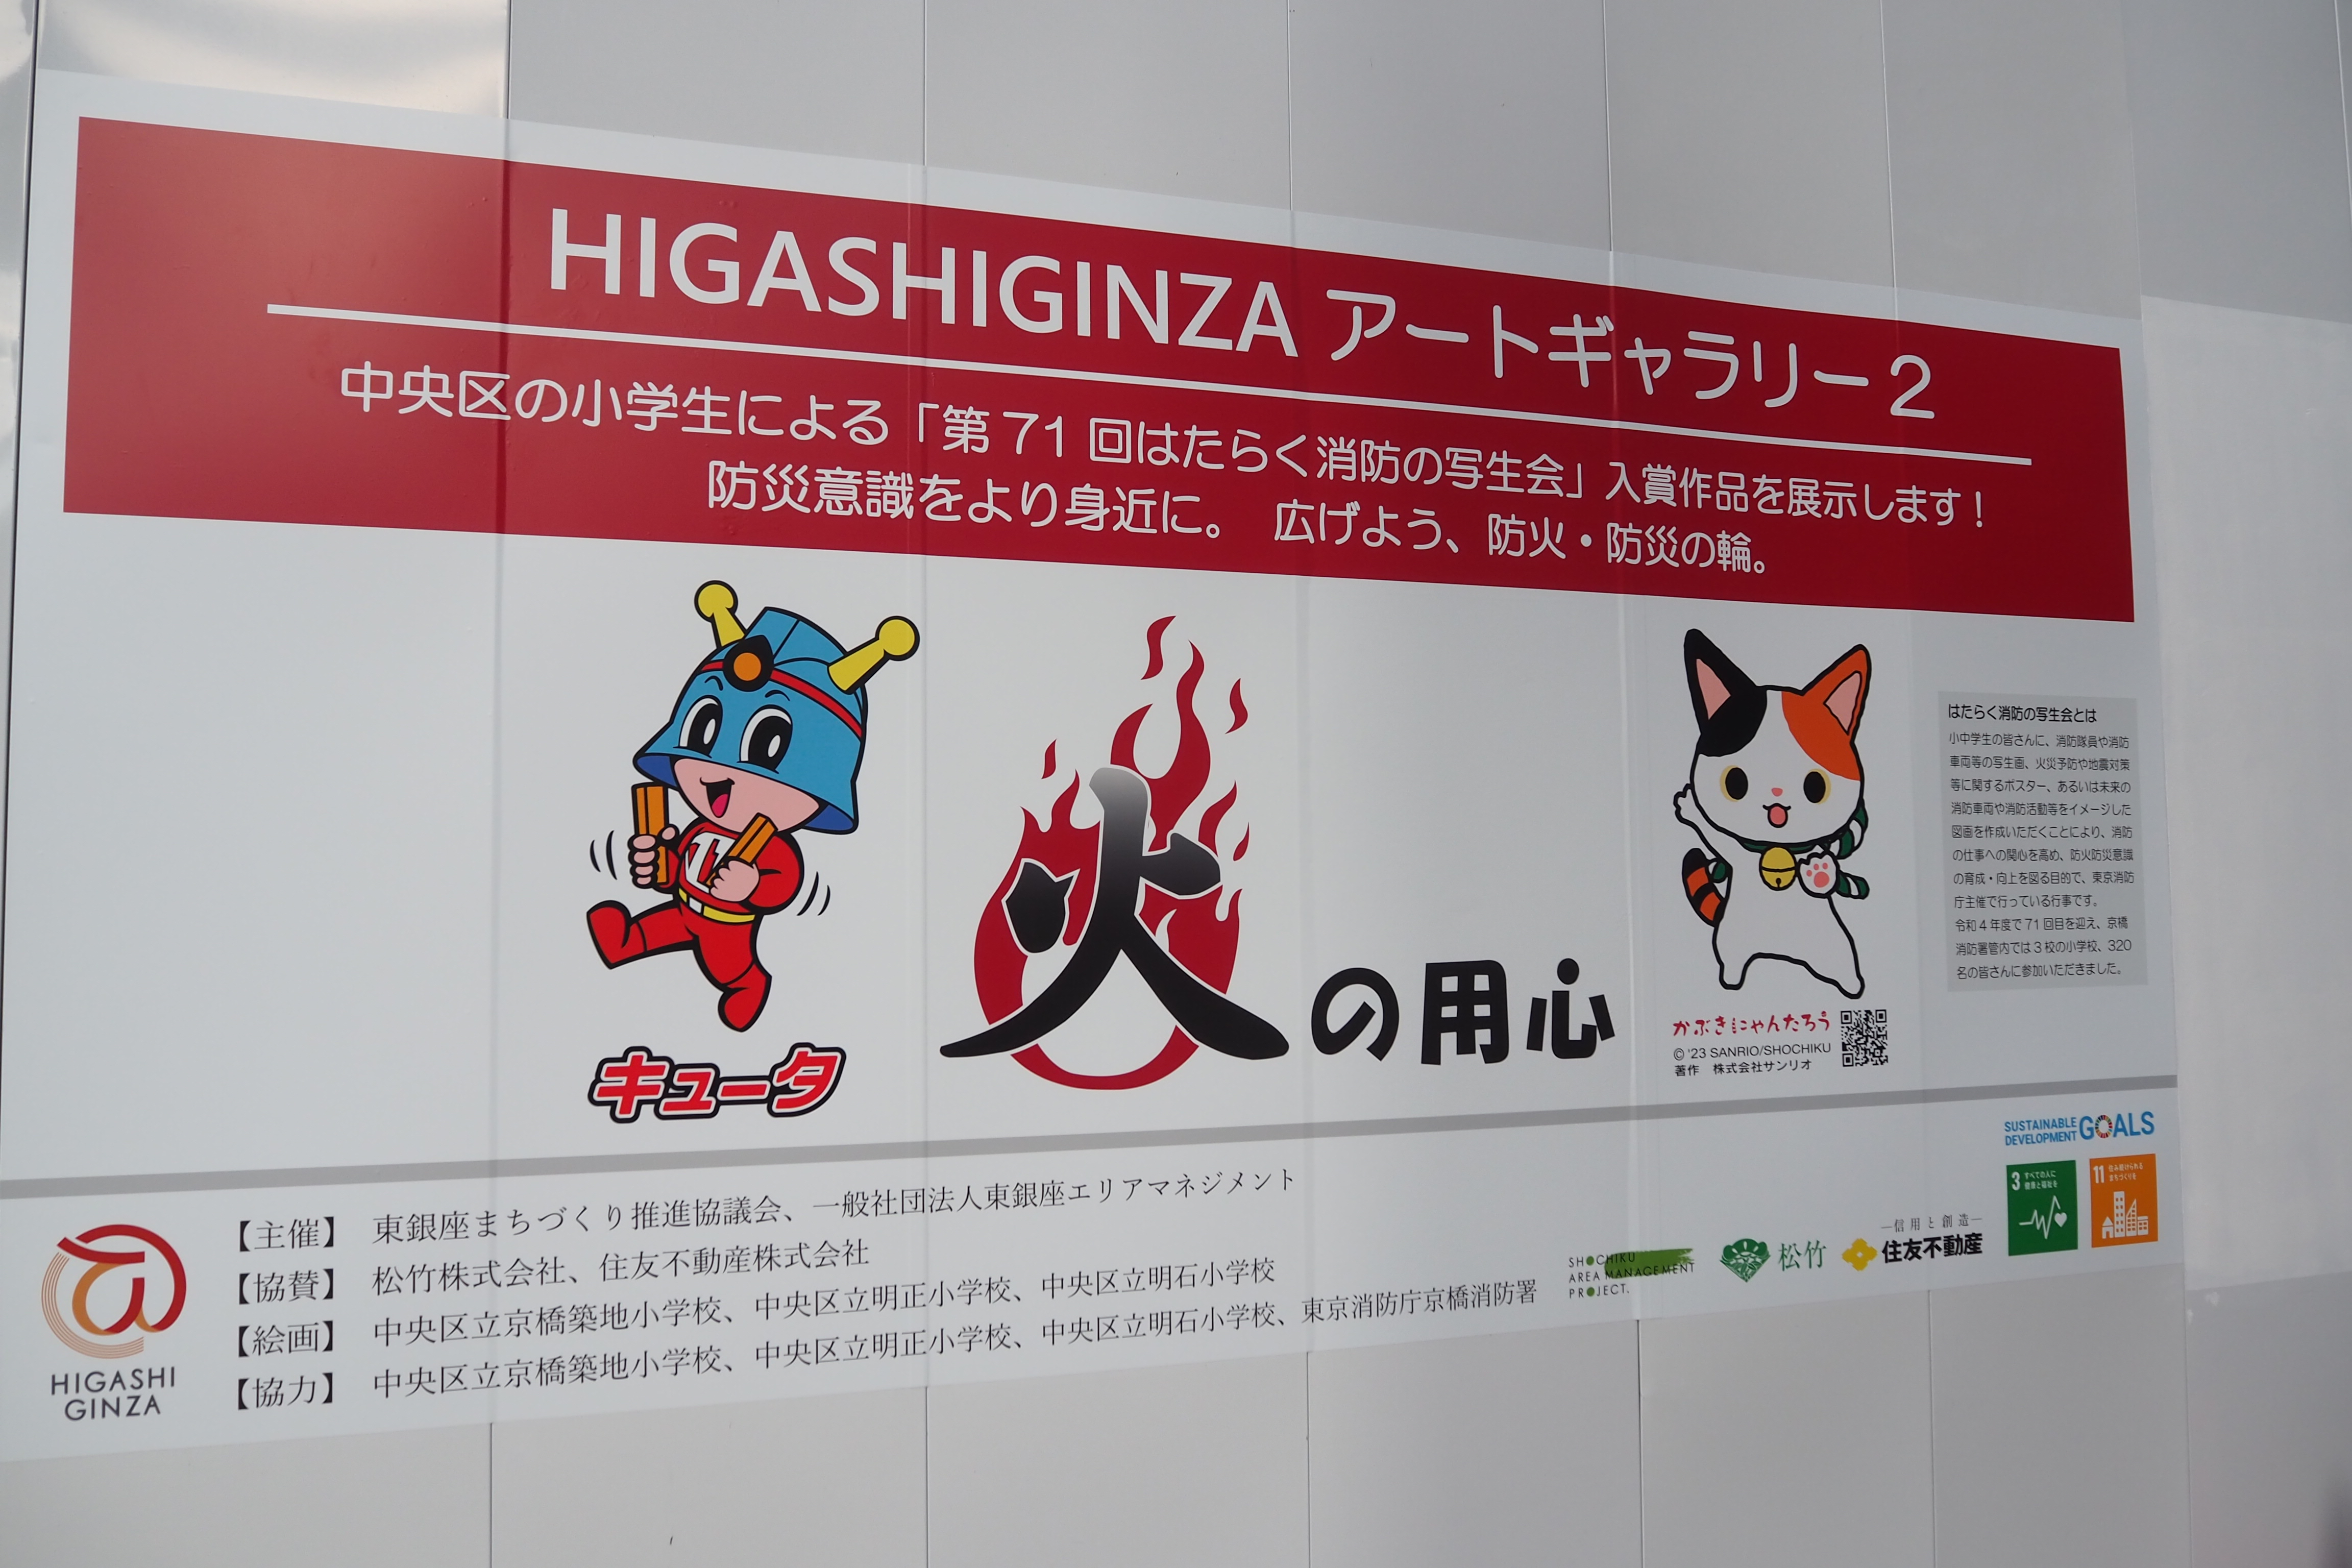 仮囲いアート『HIGASHIGINZA アートギャラリー2』